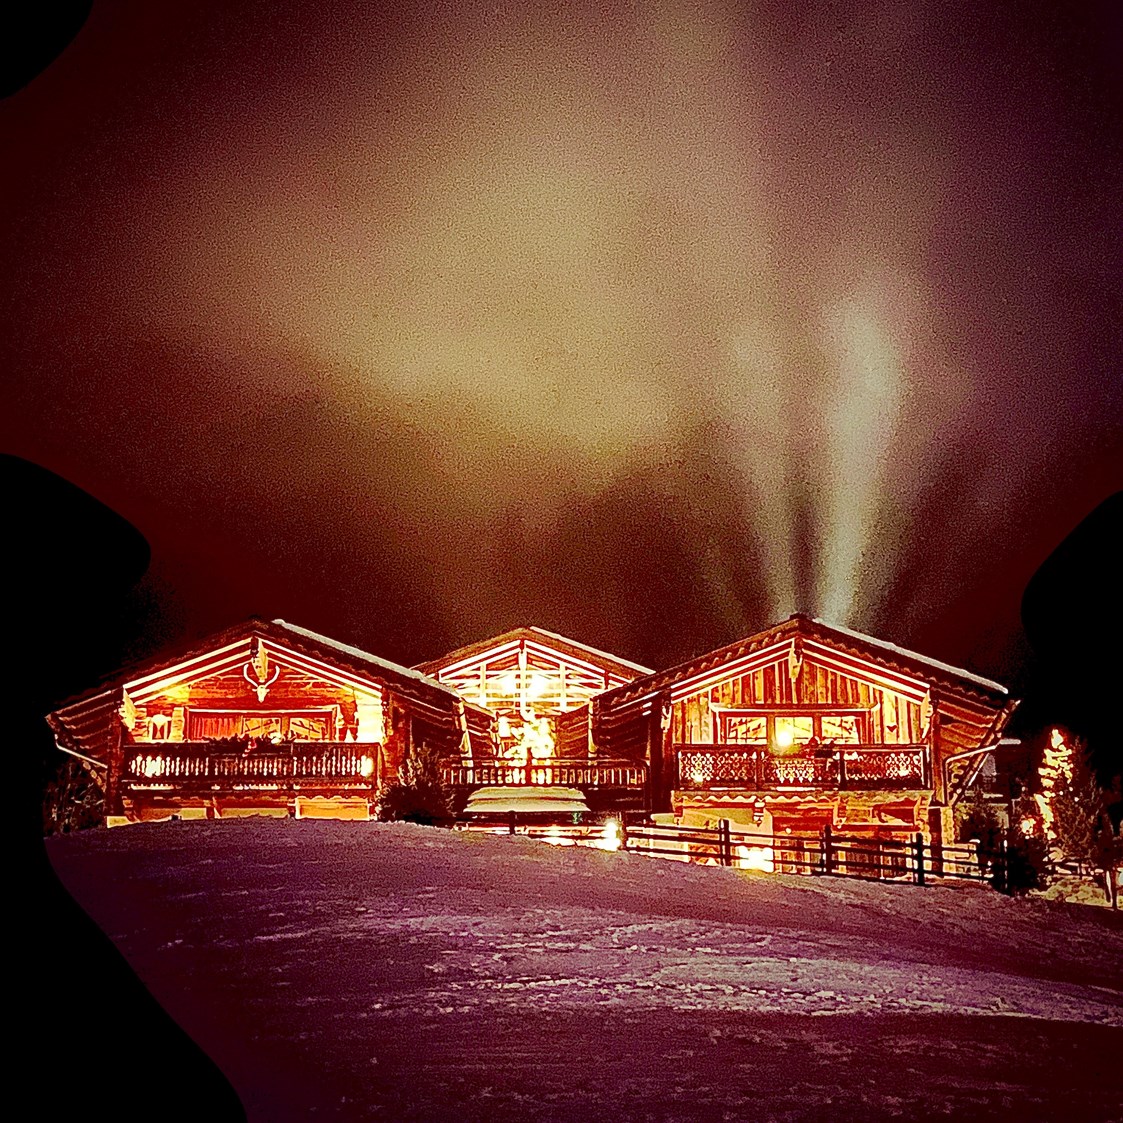 Skihotel: Almdorf Flachau by night - Almdorf Flachau